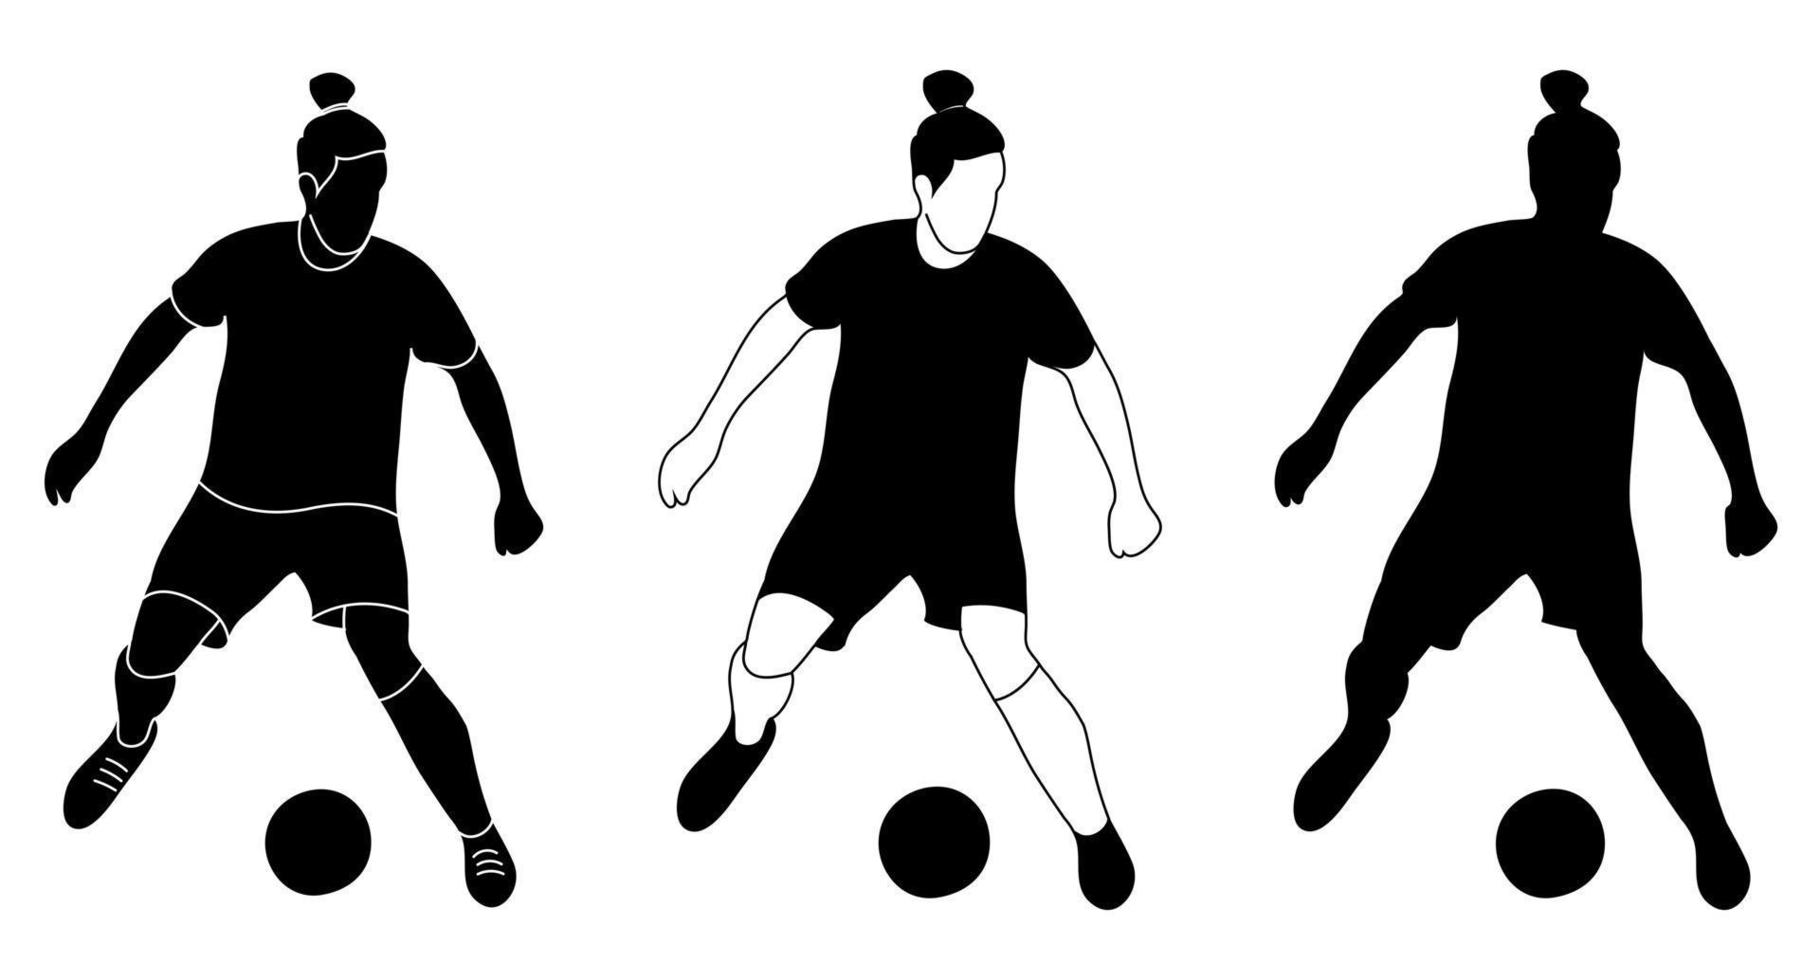 conjunto, contorno de silueta, jugador de fútbol deportista en el juego de pelota. fútbol, deporte, vector aislado.